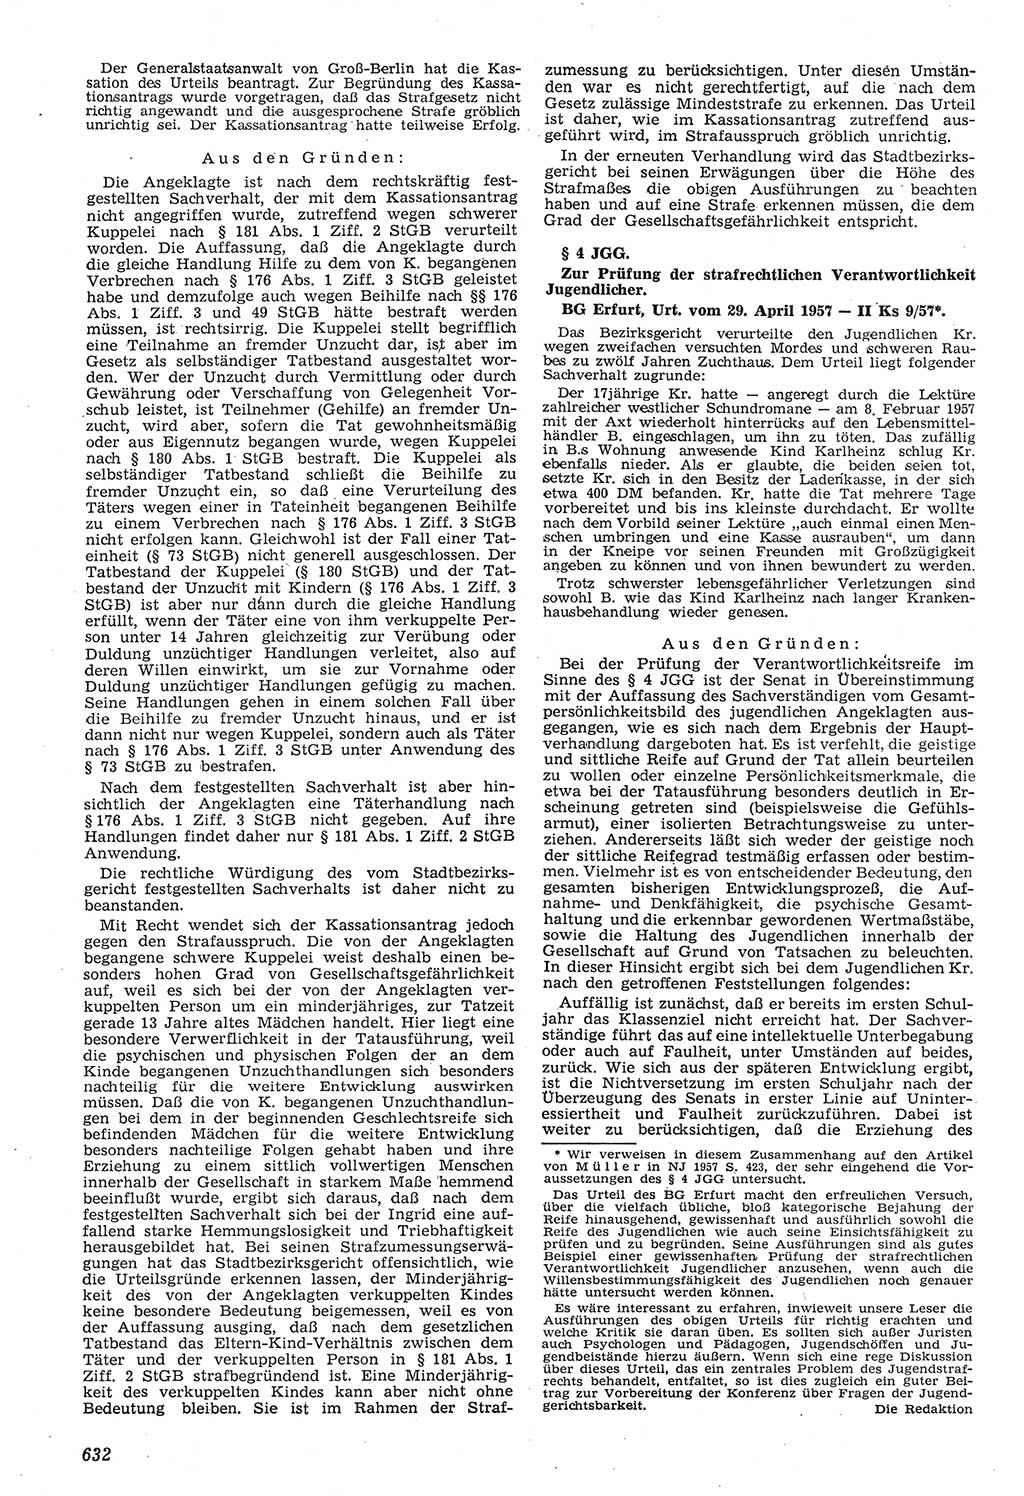 Neue Justiz (NJ), Zeitschrift für Recht und Rechtswissenschaft [Deutsche Demokratische Republik (DDR)], 11. Jahrgang 1957, Seite 632 (NJ DDR 1957, S. 632)